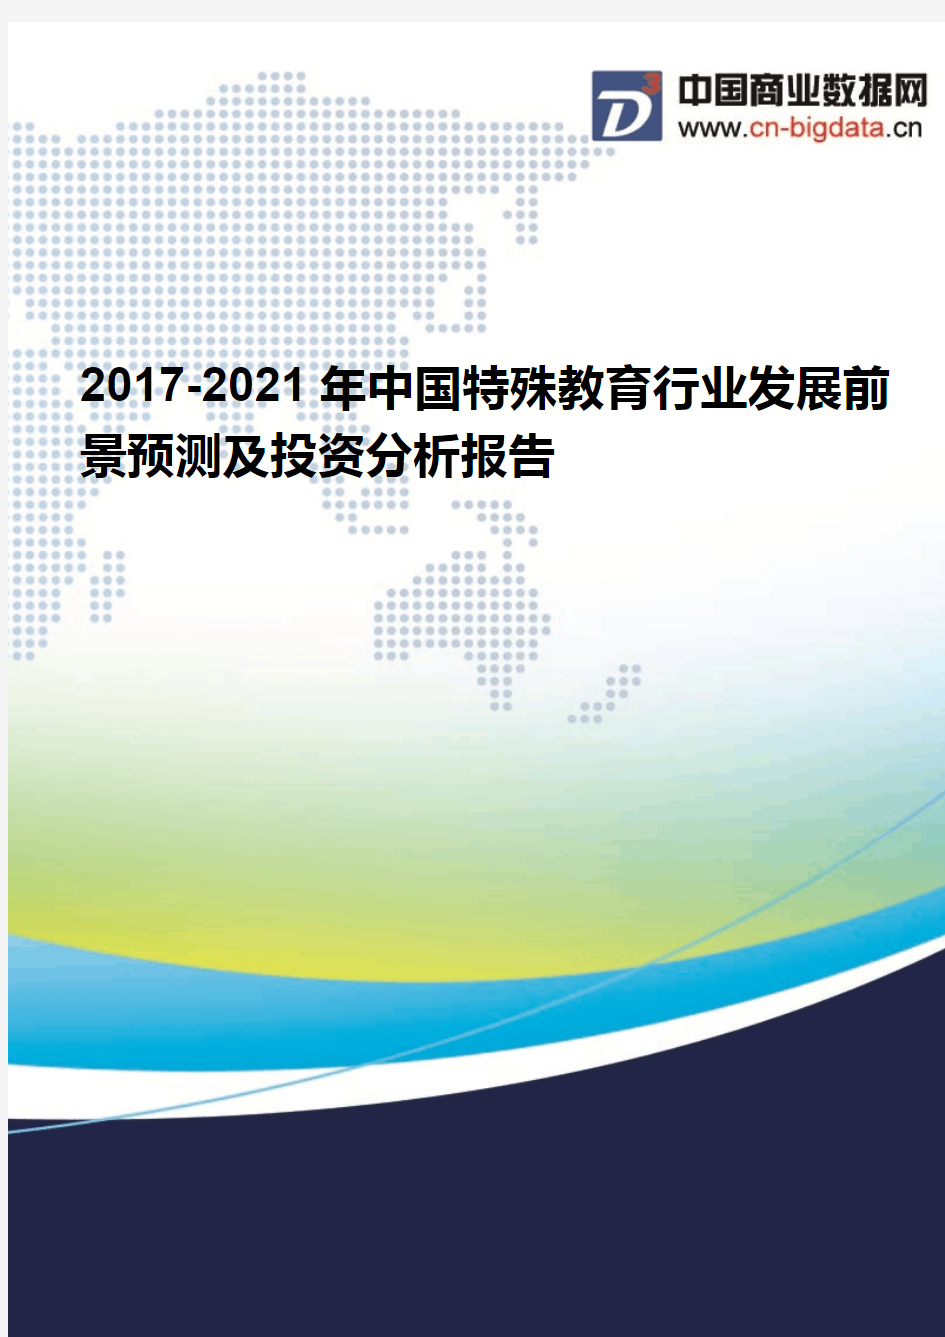 2017-2021年中国特殊教育行业发展前景预测及投资分析报告